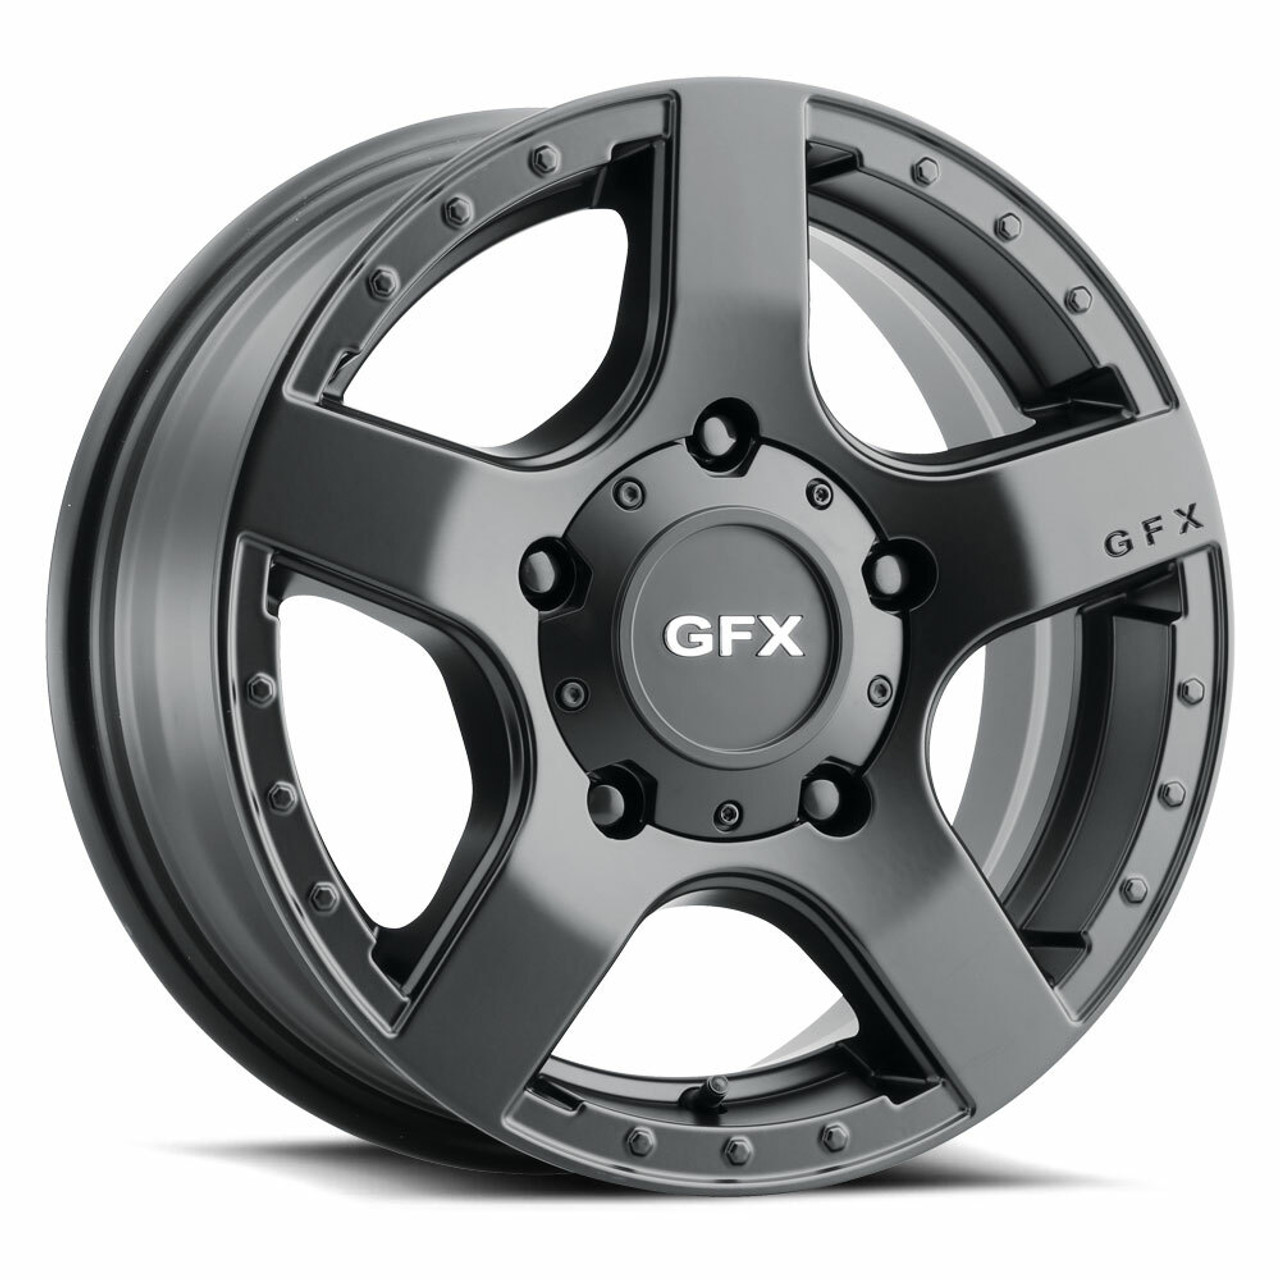 Set 4 16" Voxx G-FX MV1 Matte Black Wheels 16x6.5 5x130 45mm Rims